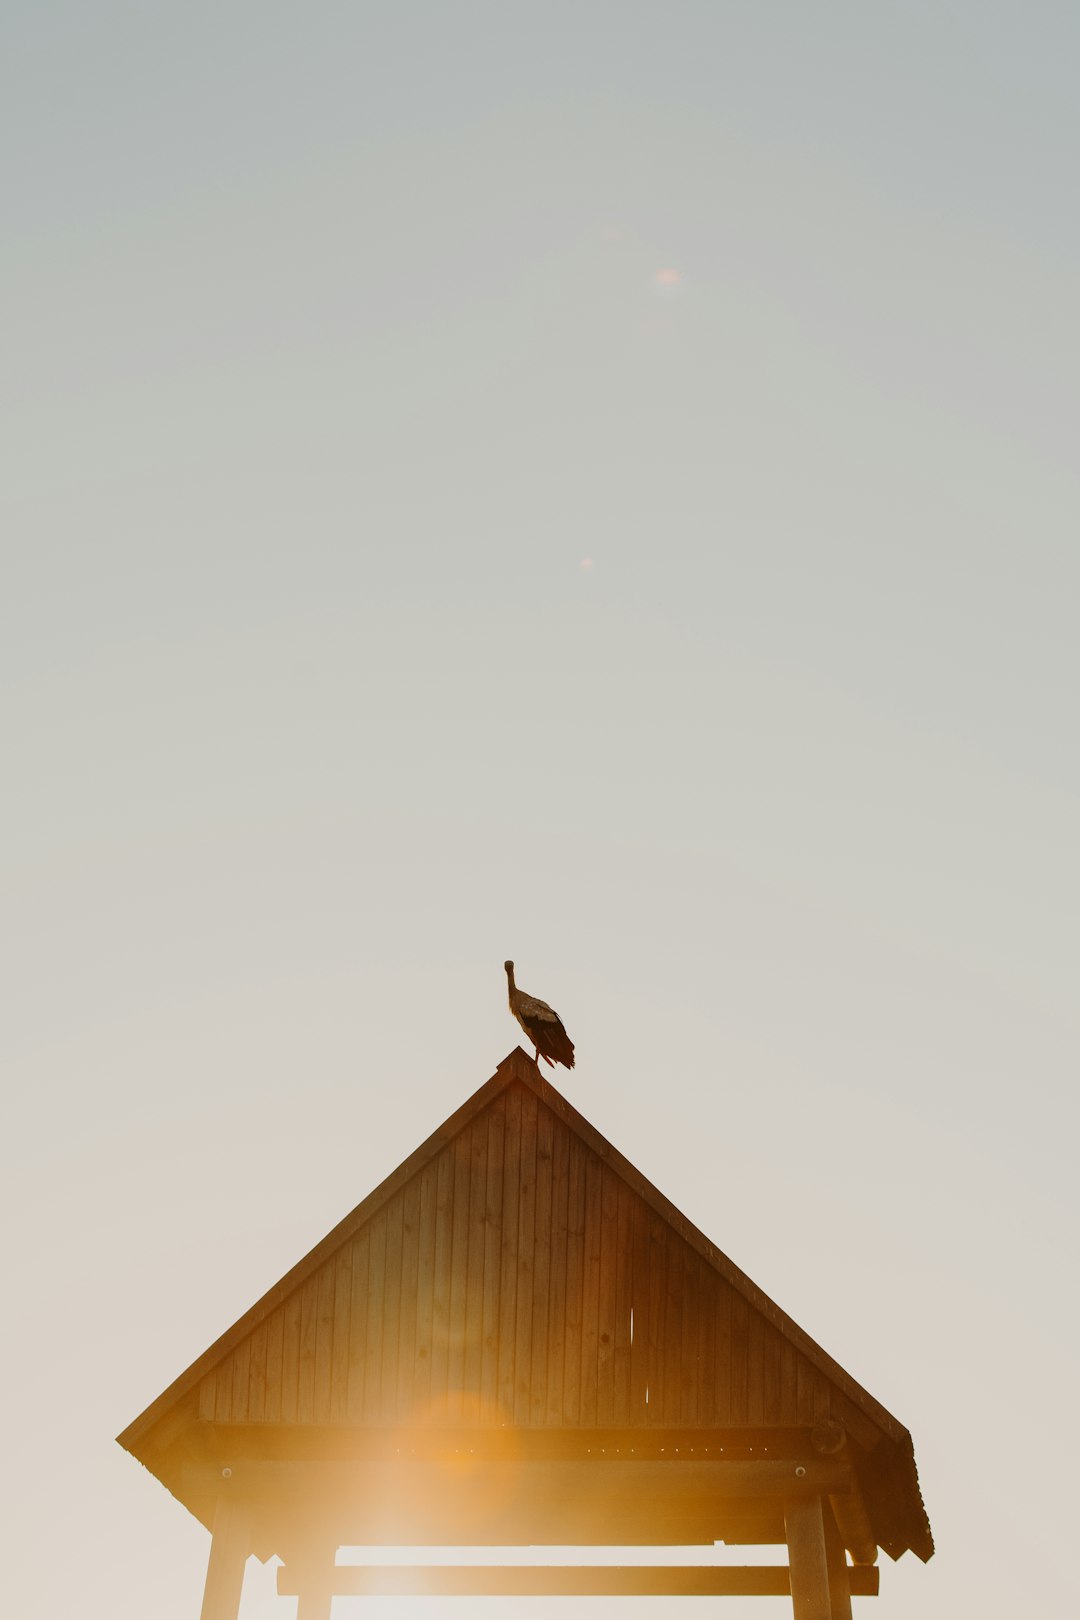 brown wooden bird house under white sky during daytime